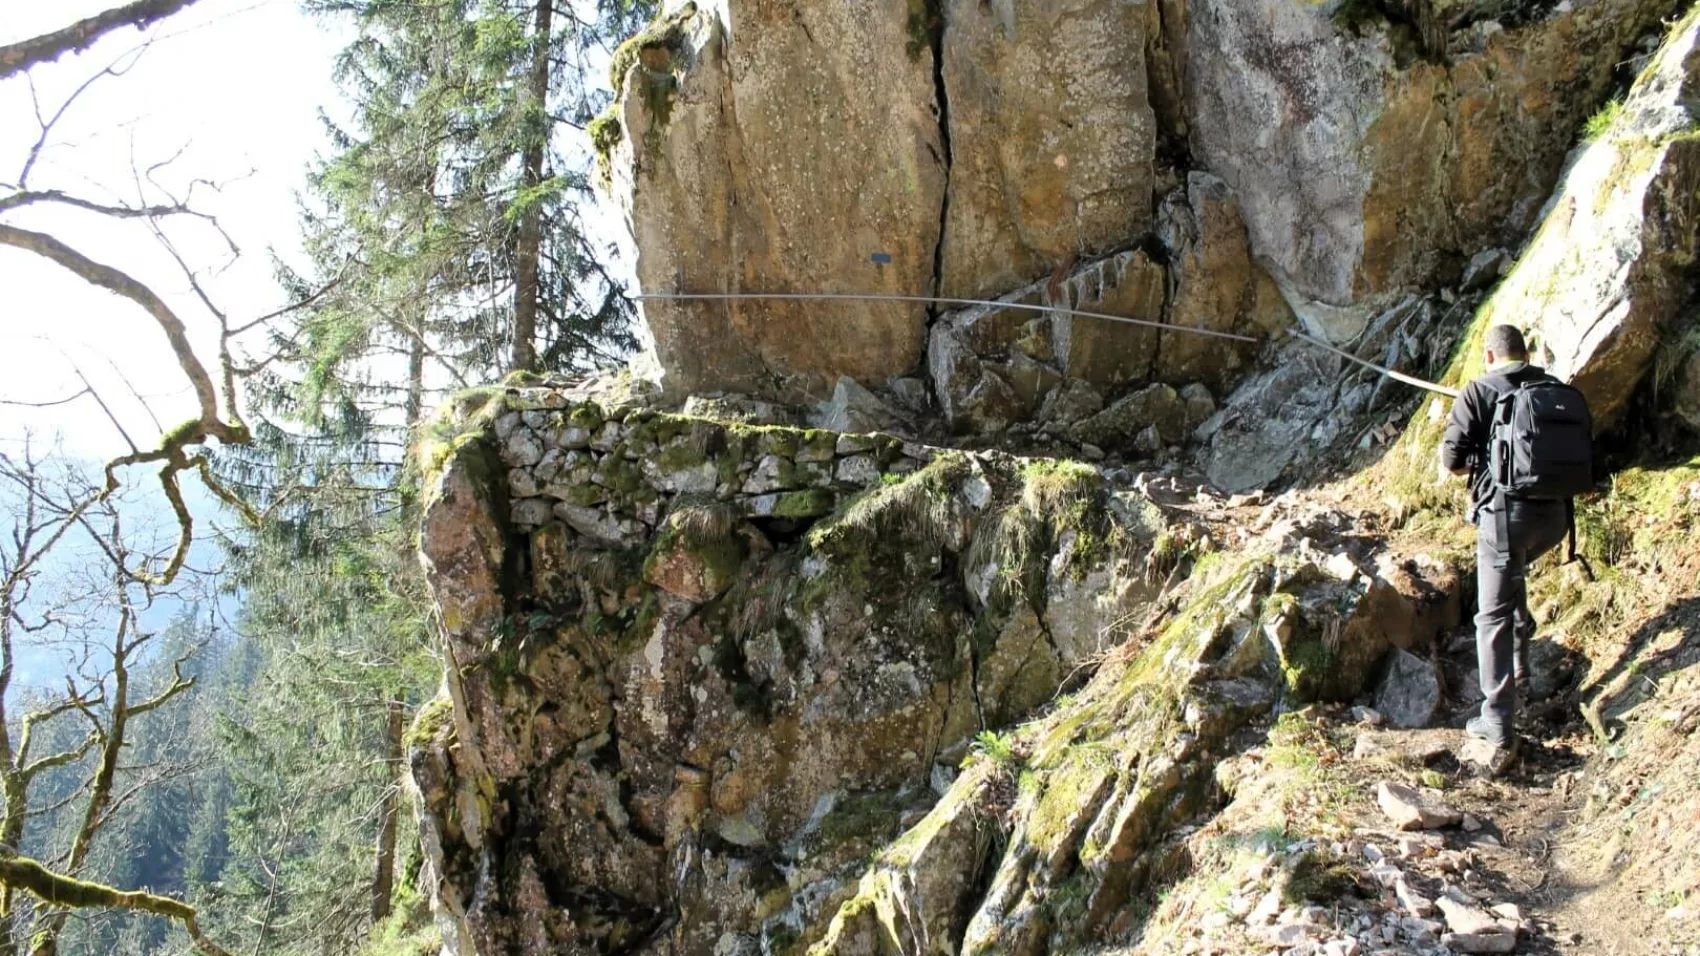 sentier des roches dans les Vosges, une randonnée difficile mais extraordinaire